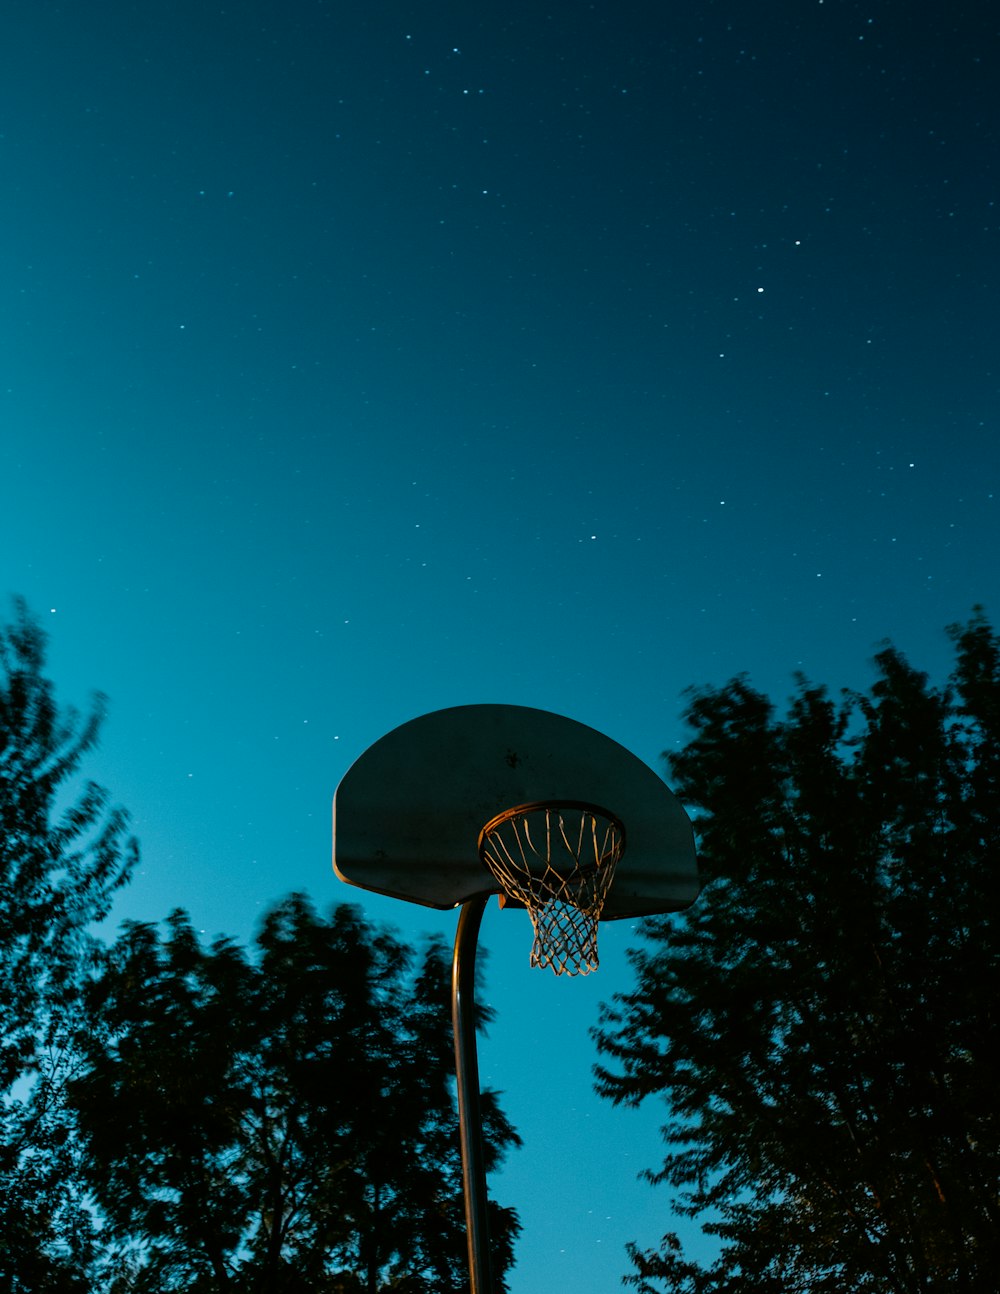 Brauner und weißer Basketballkorb in der Nähe von Bäumen